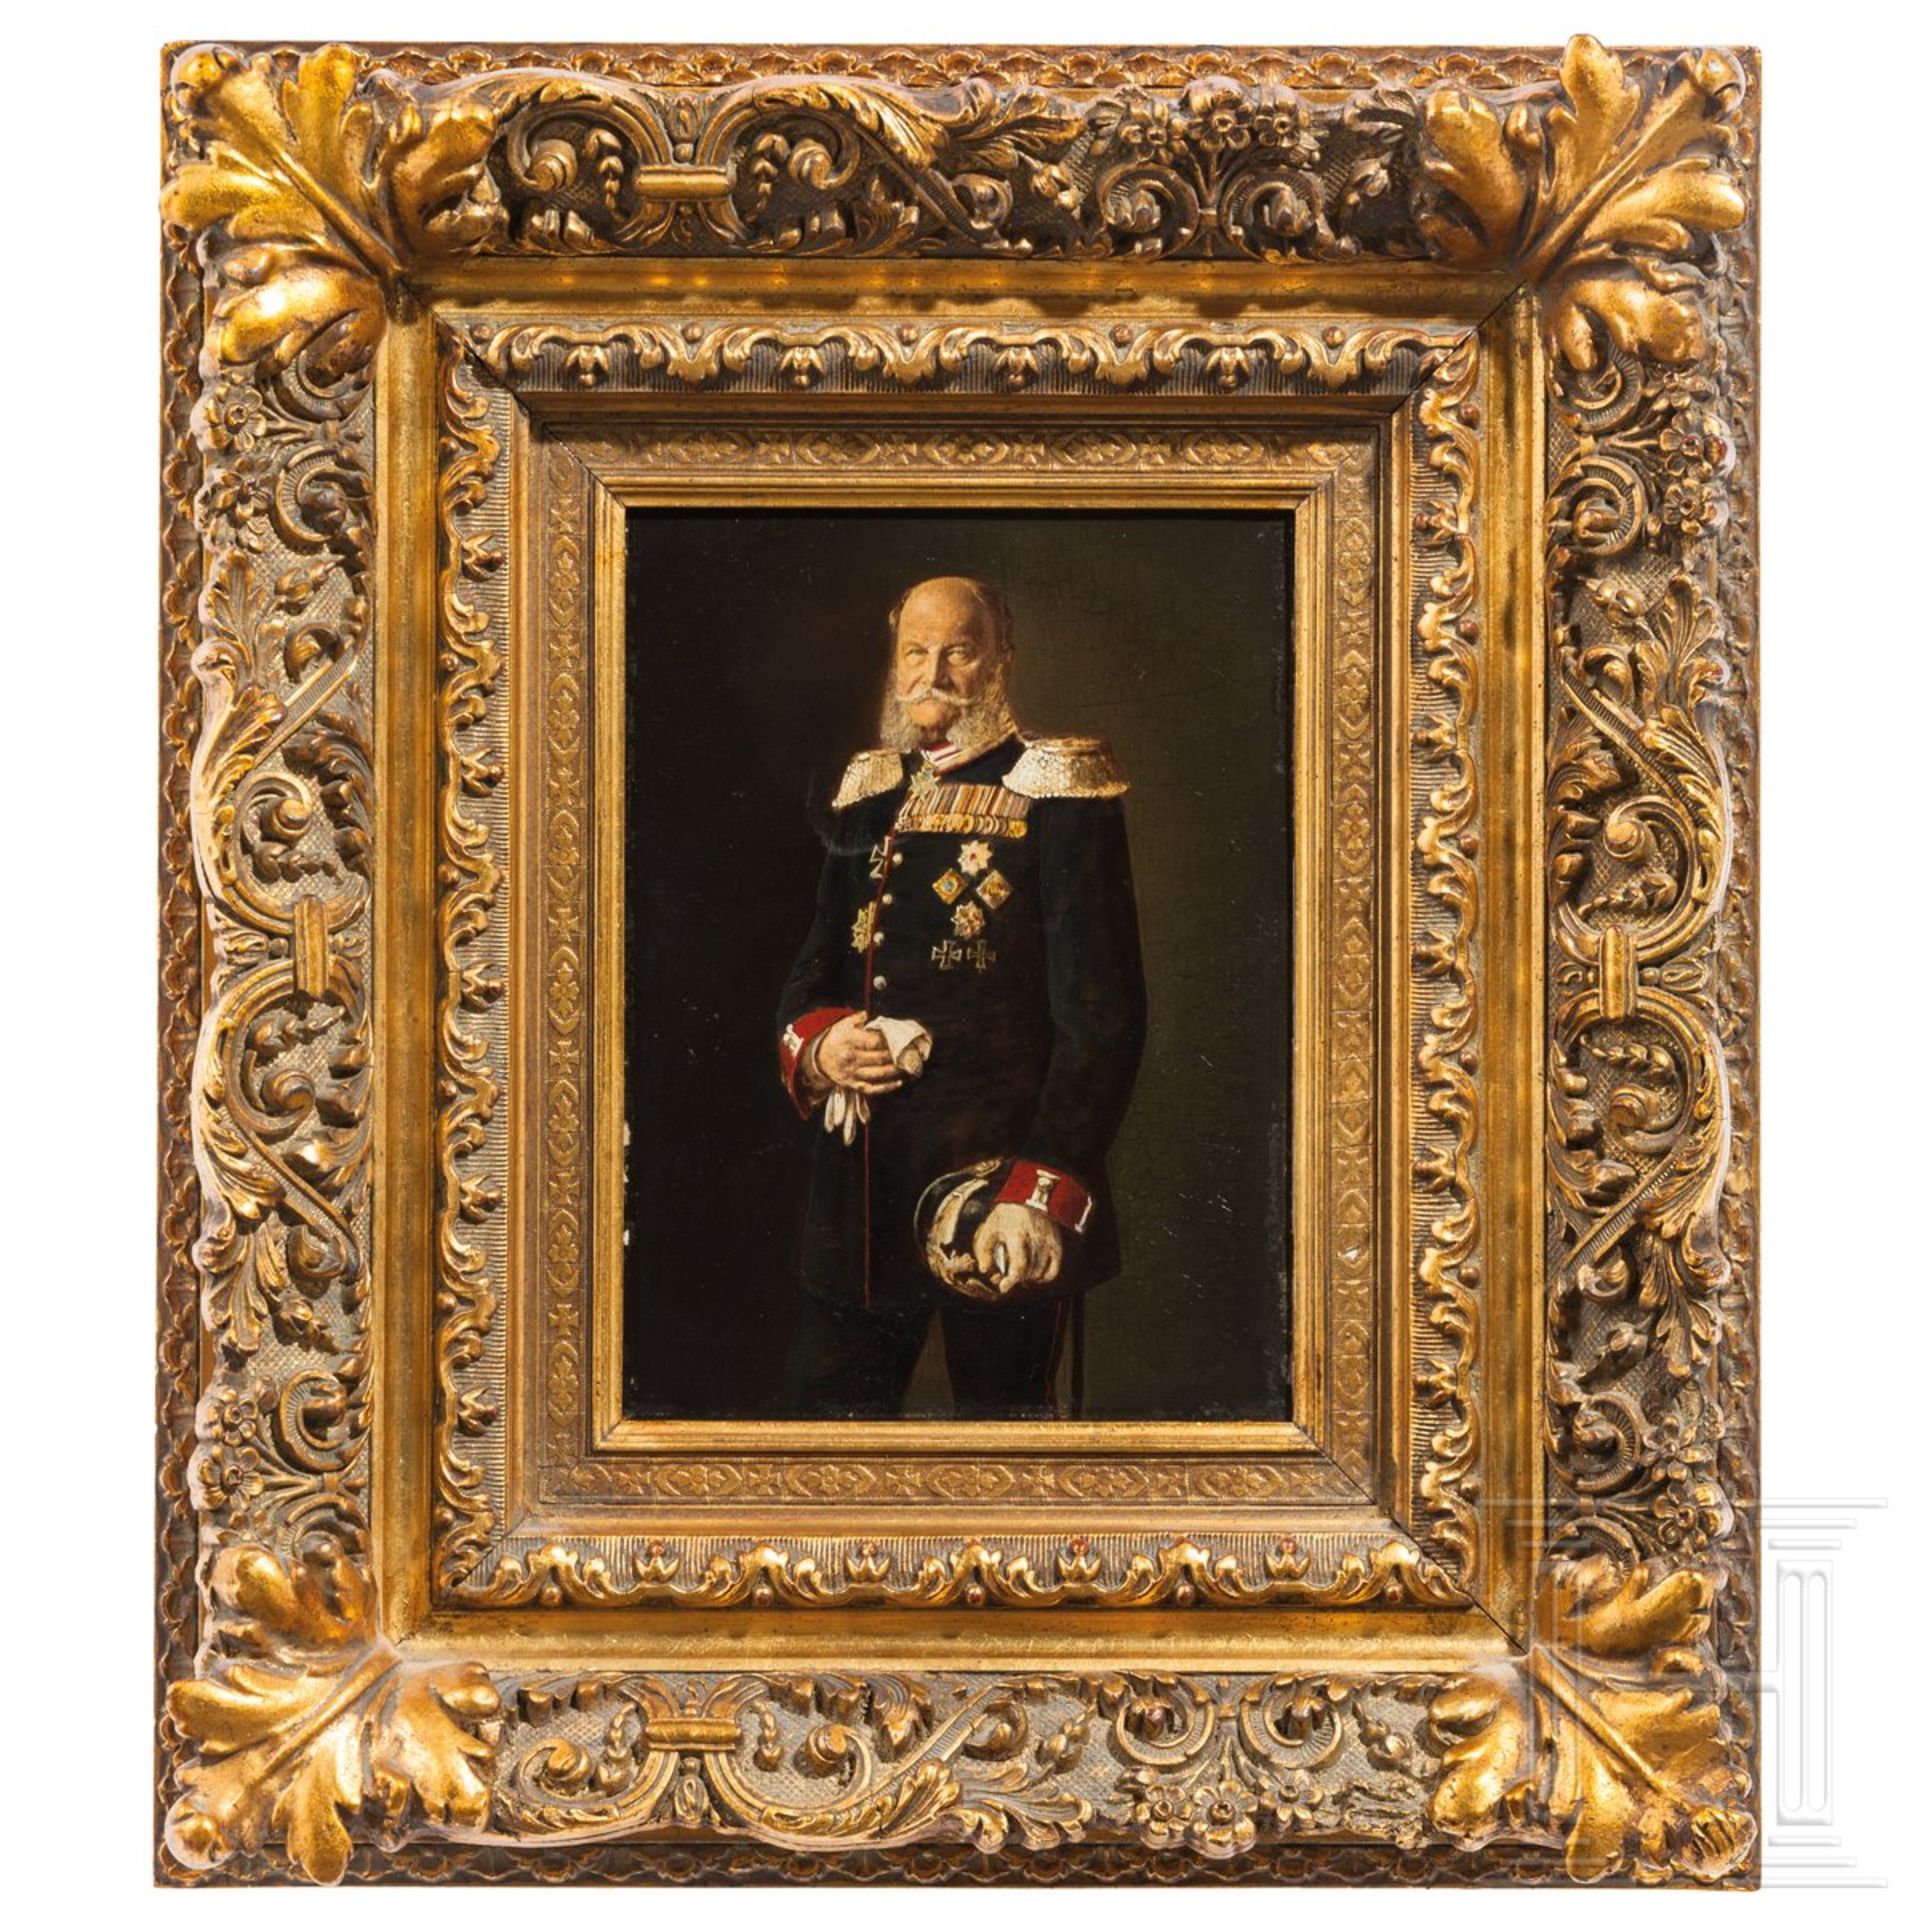 Kaiser Wilhelm I. - Portraitgemälde, Ende 19. Jhdt.